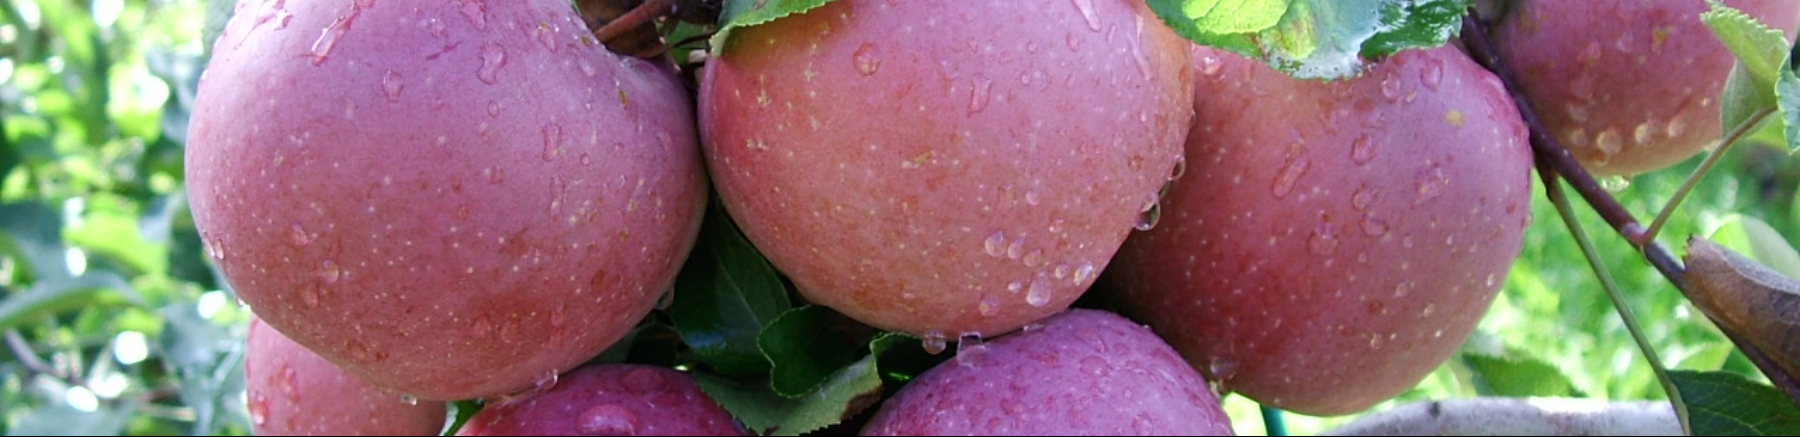 7 melo - trattamenti di chiusura e concimazione autunnale: Immagine Header